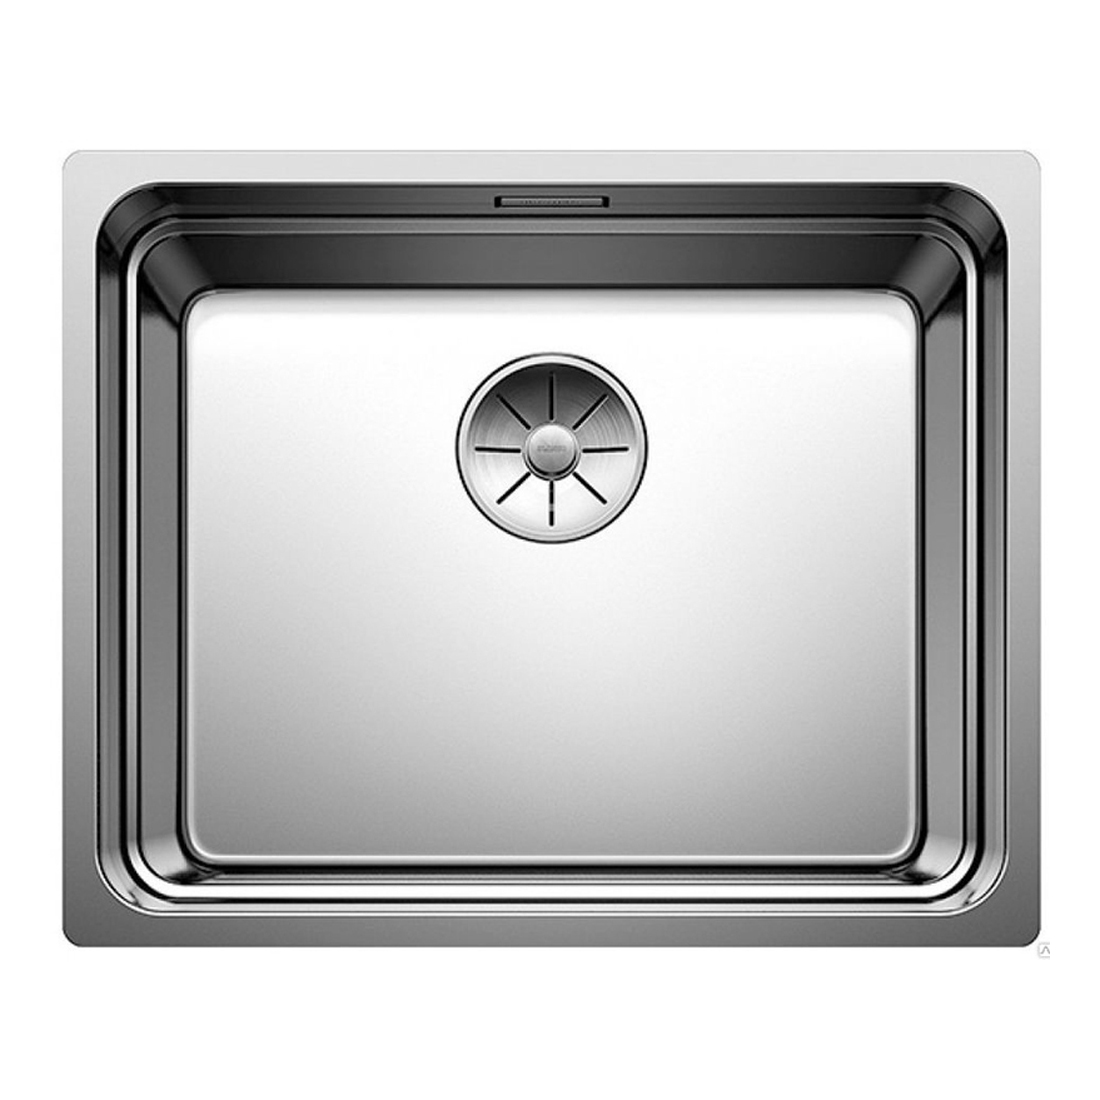 Кухонная мойка Blanco Etagon 500-U полированная сталь кухонная мойка franke 101 0689 948 нержавеющая сталь